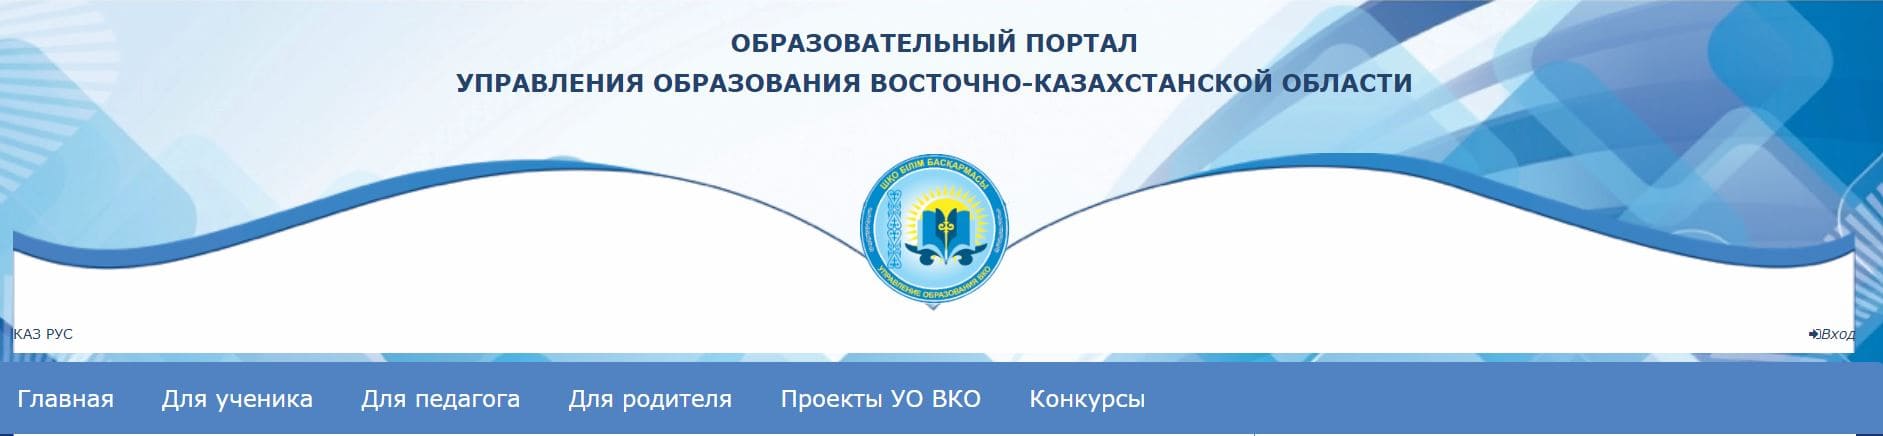 Образовательный портал управления образованием Восточно-Казахстанской области (bilimvkoportal.kz)